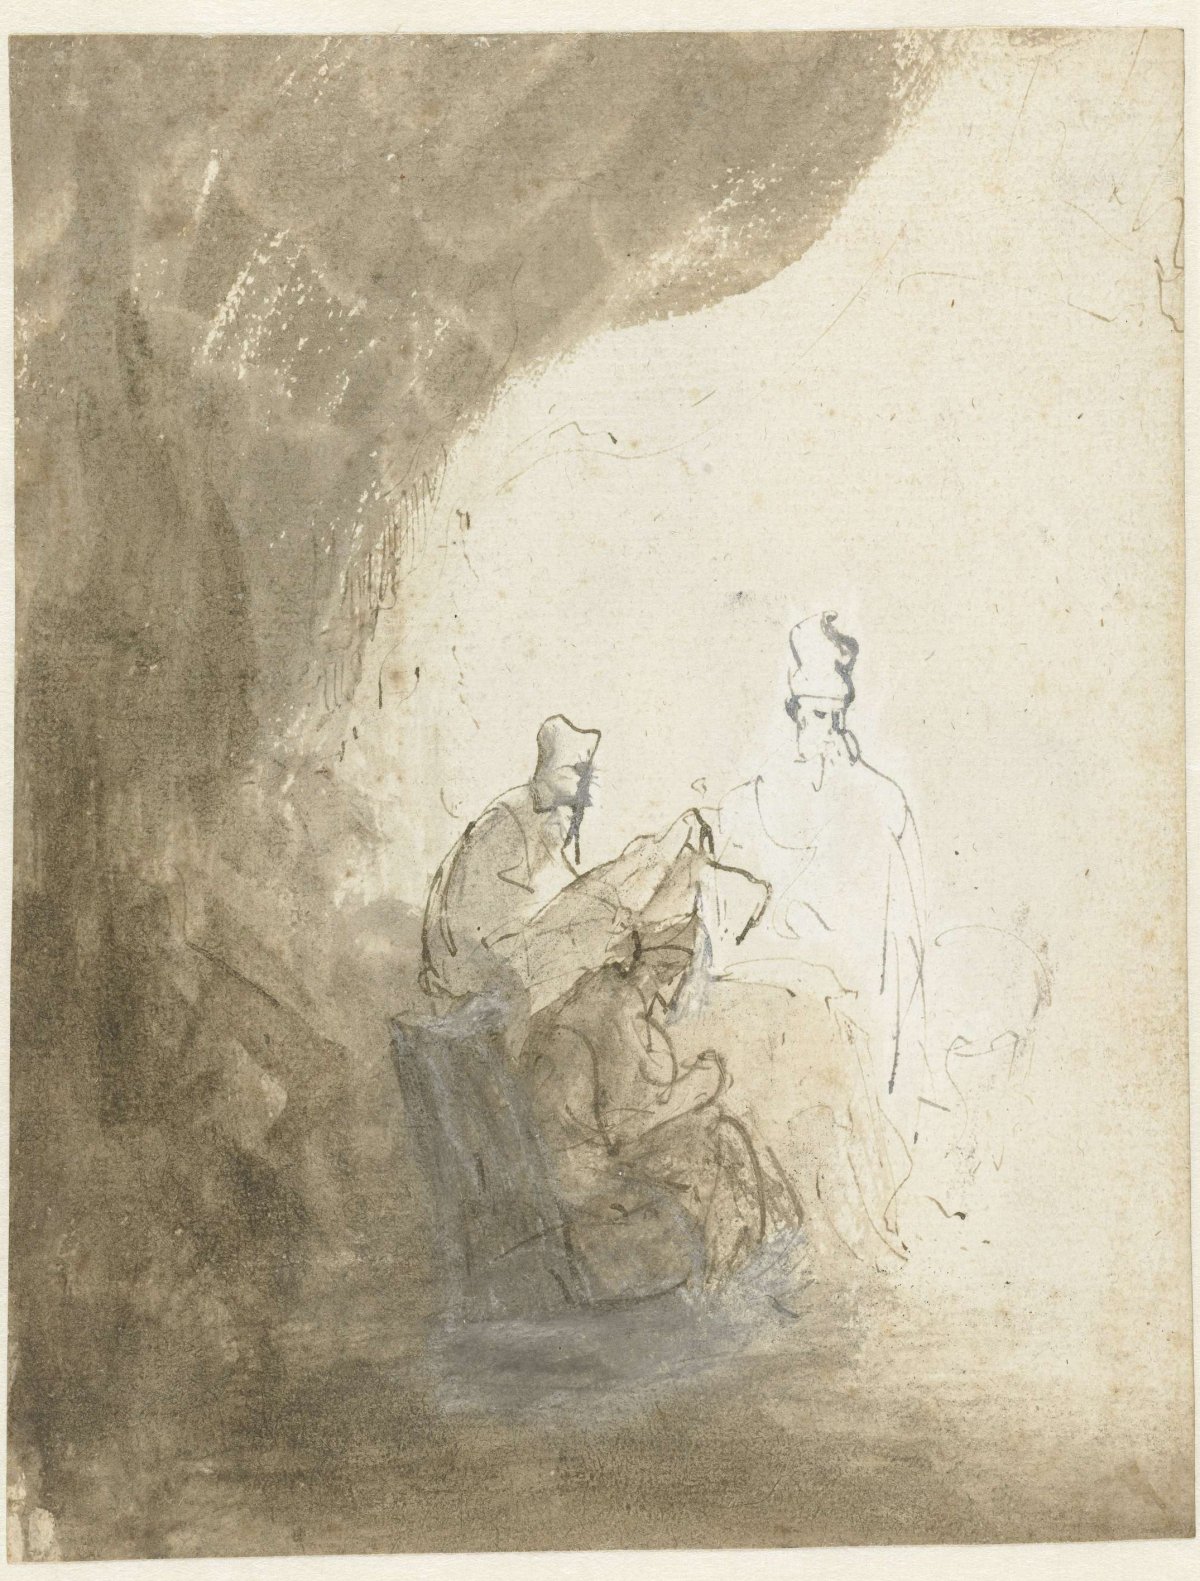 Three Scribes, Rembrandt van Rijn, c. 1628 - c. 1629